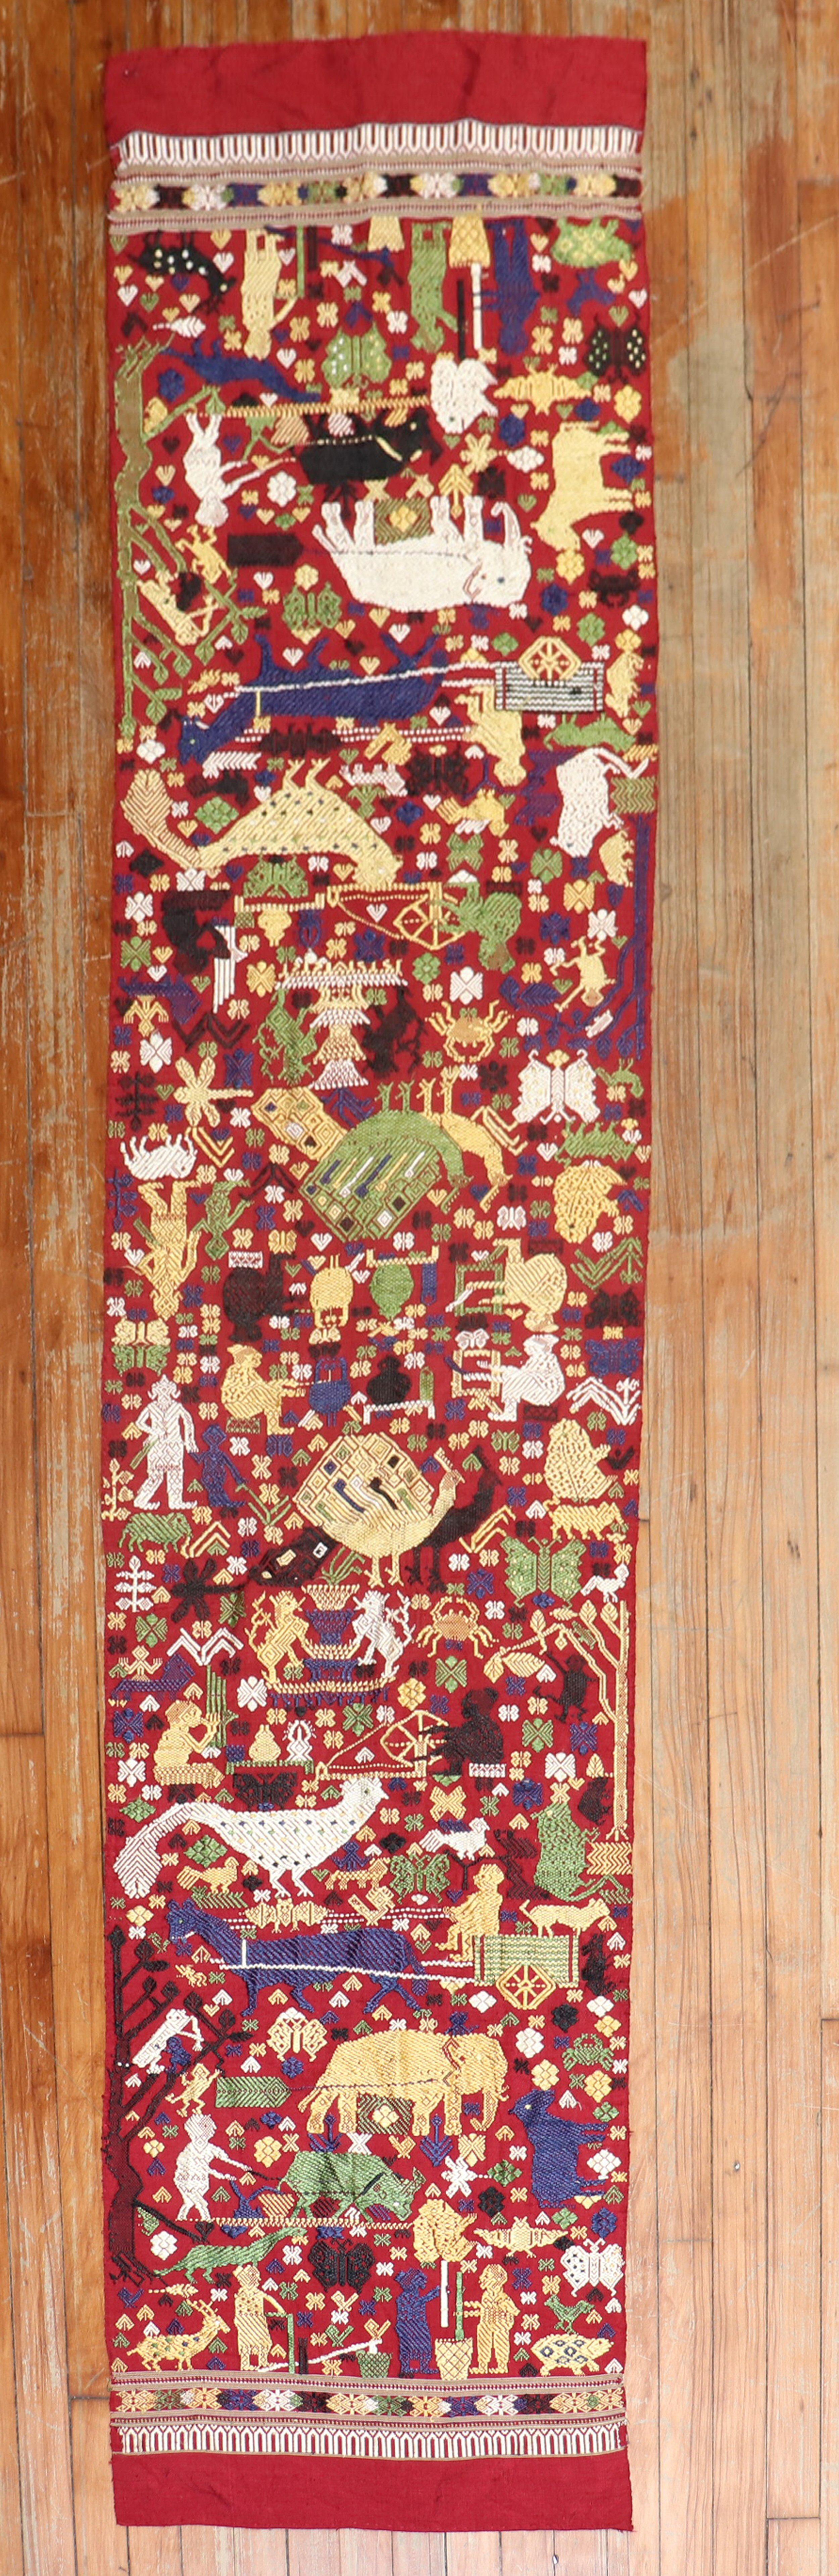 Ägyptische Textilstickerei des späten 20. Jahrhunderts mit einem malerischen Design

Maße: 1'10'' x 7'10''.